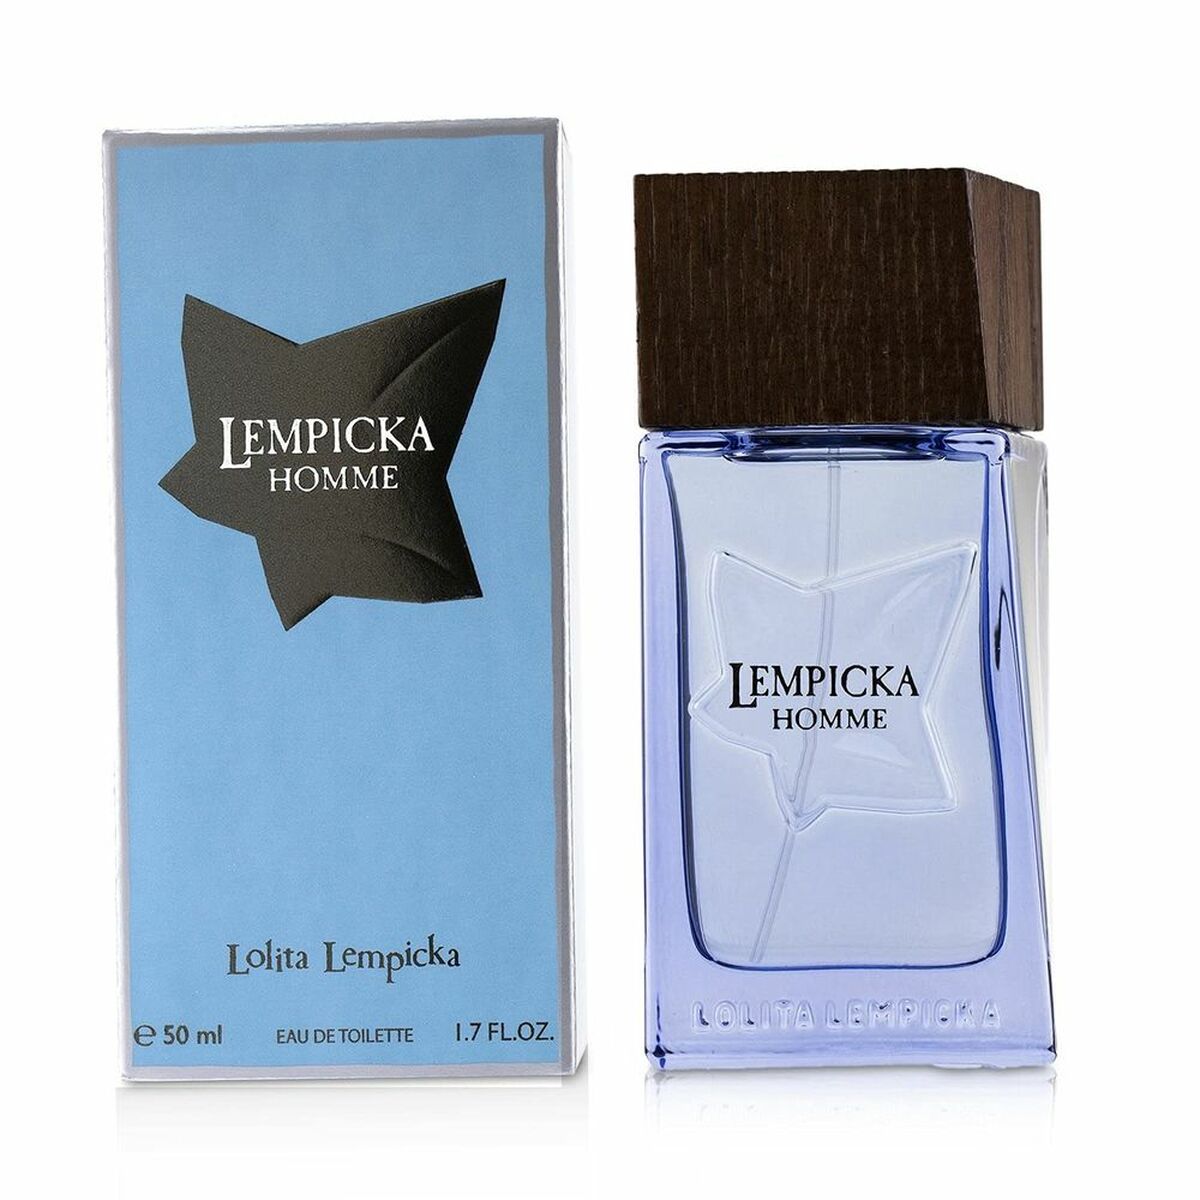 Perfume Hombre Lempicka Homme Lolita Lempicka EDT (50 ml)